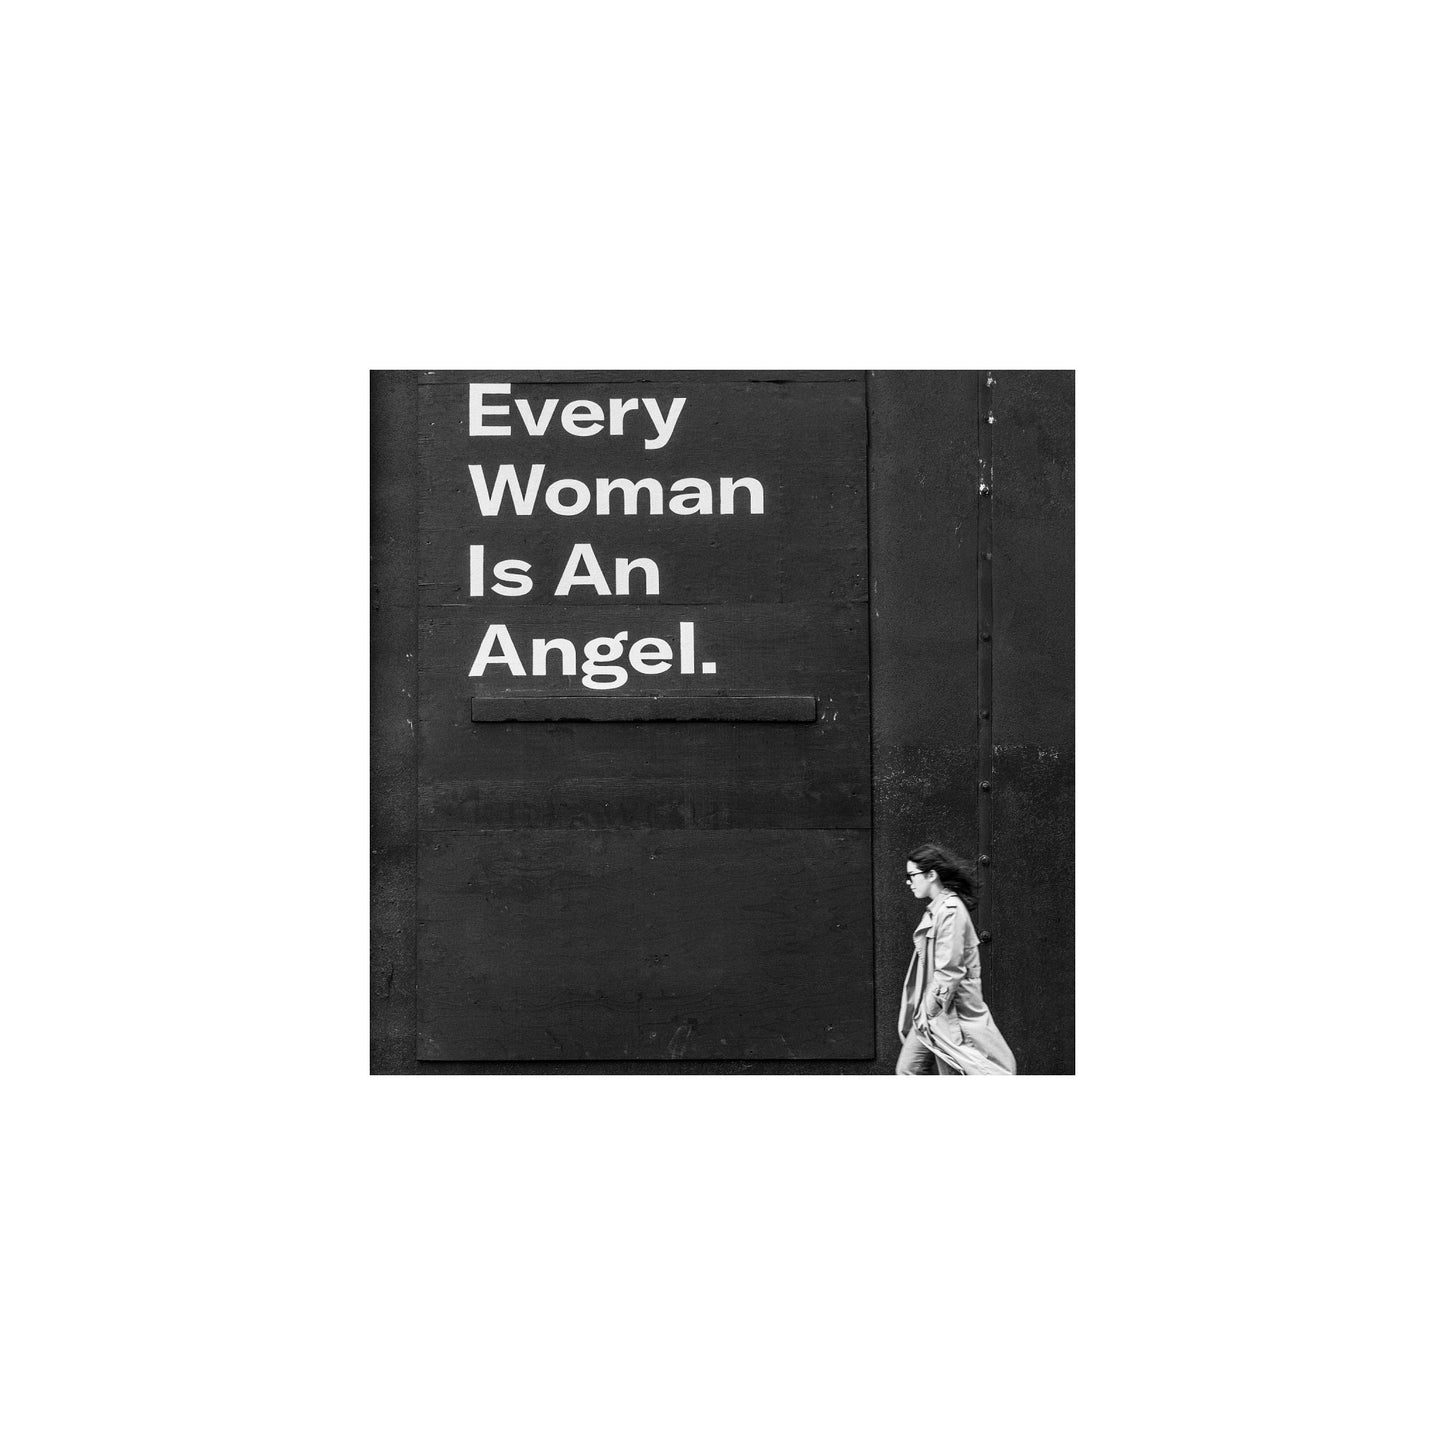 Every Woman is an Angel by Paul Lambert